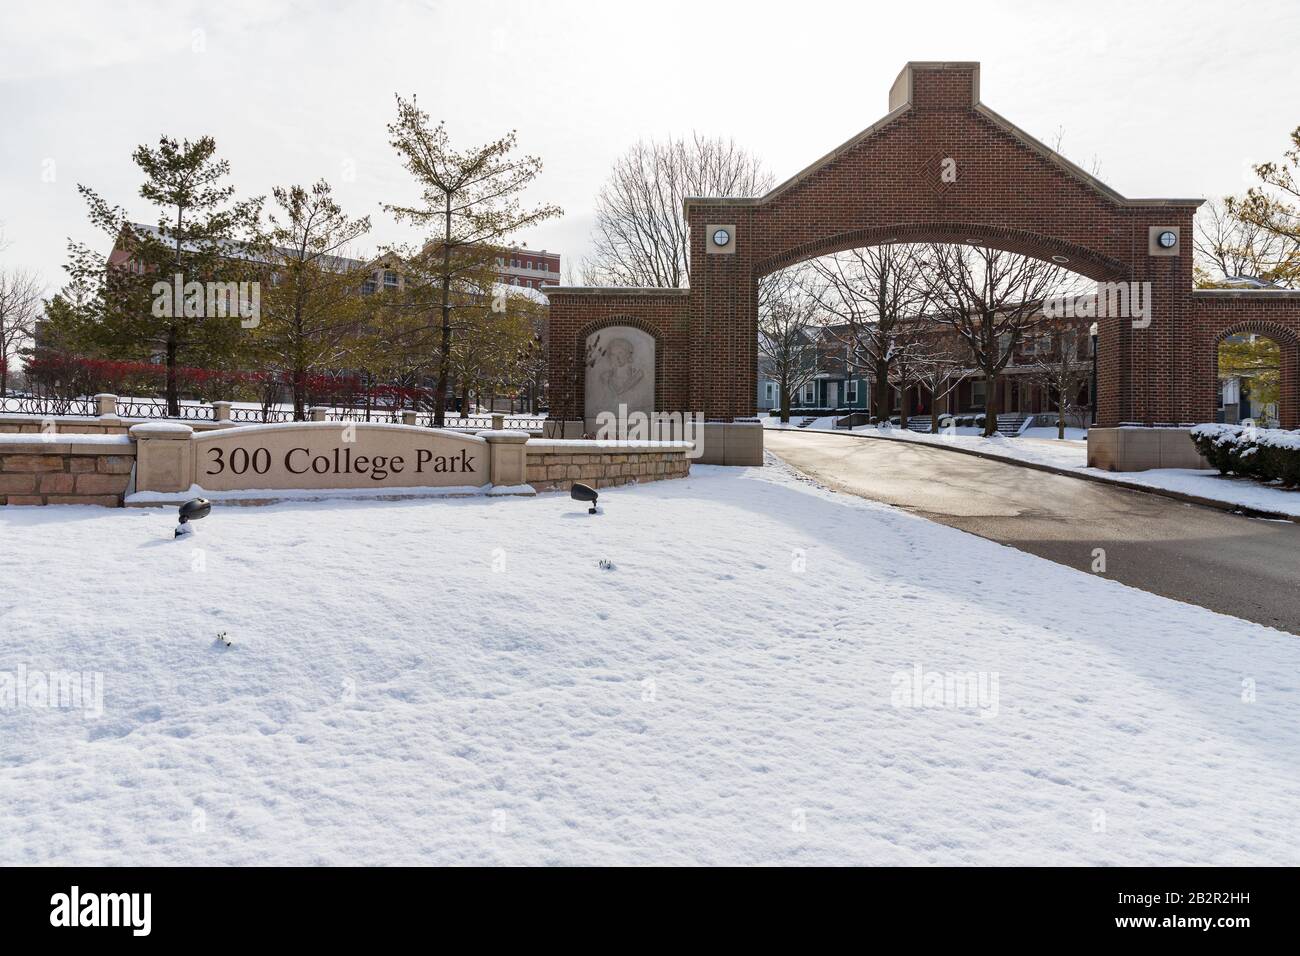 Dayton, OH, USA / 28. Februar 2020: 300 College Park, University of Dayton, mit frischem Winterschnee auf dem Boden. Stockfoto